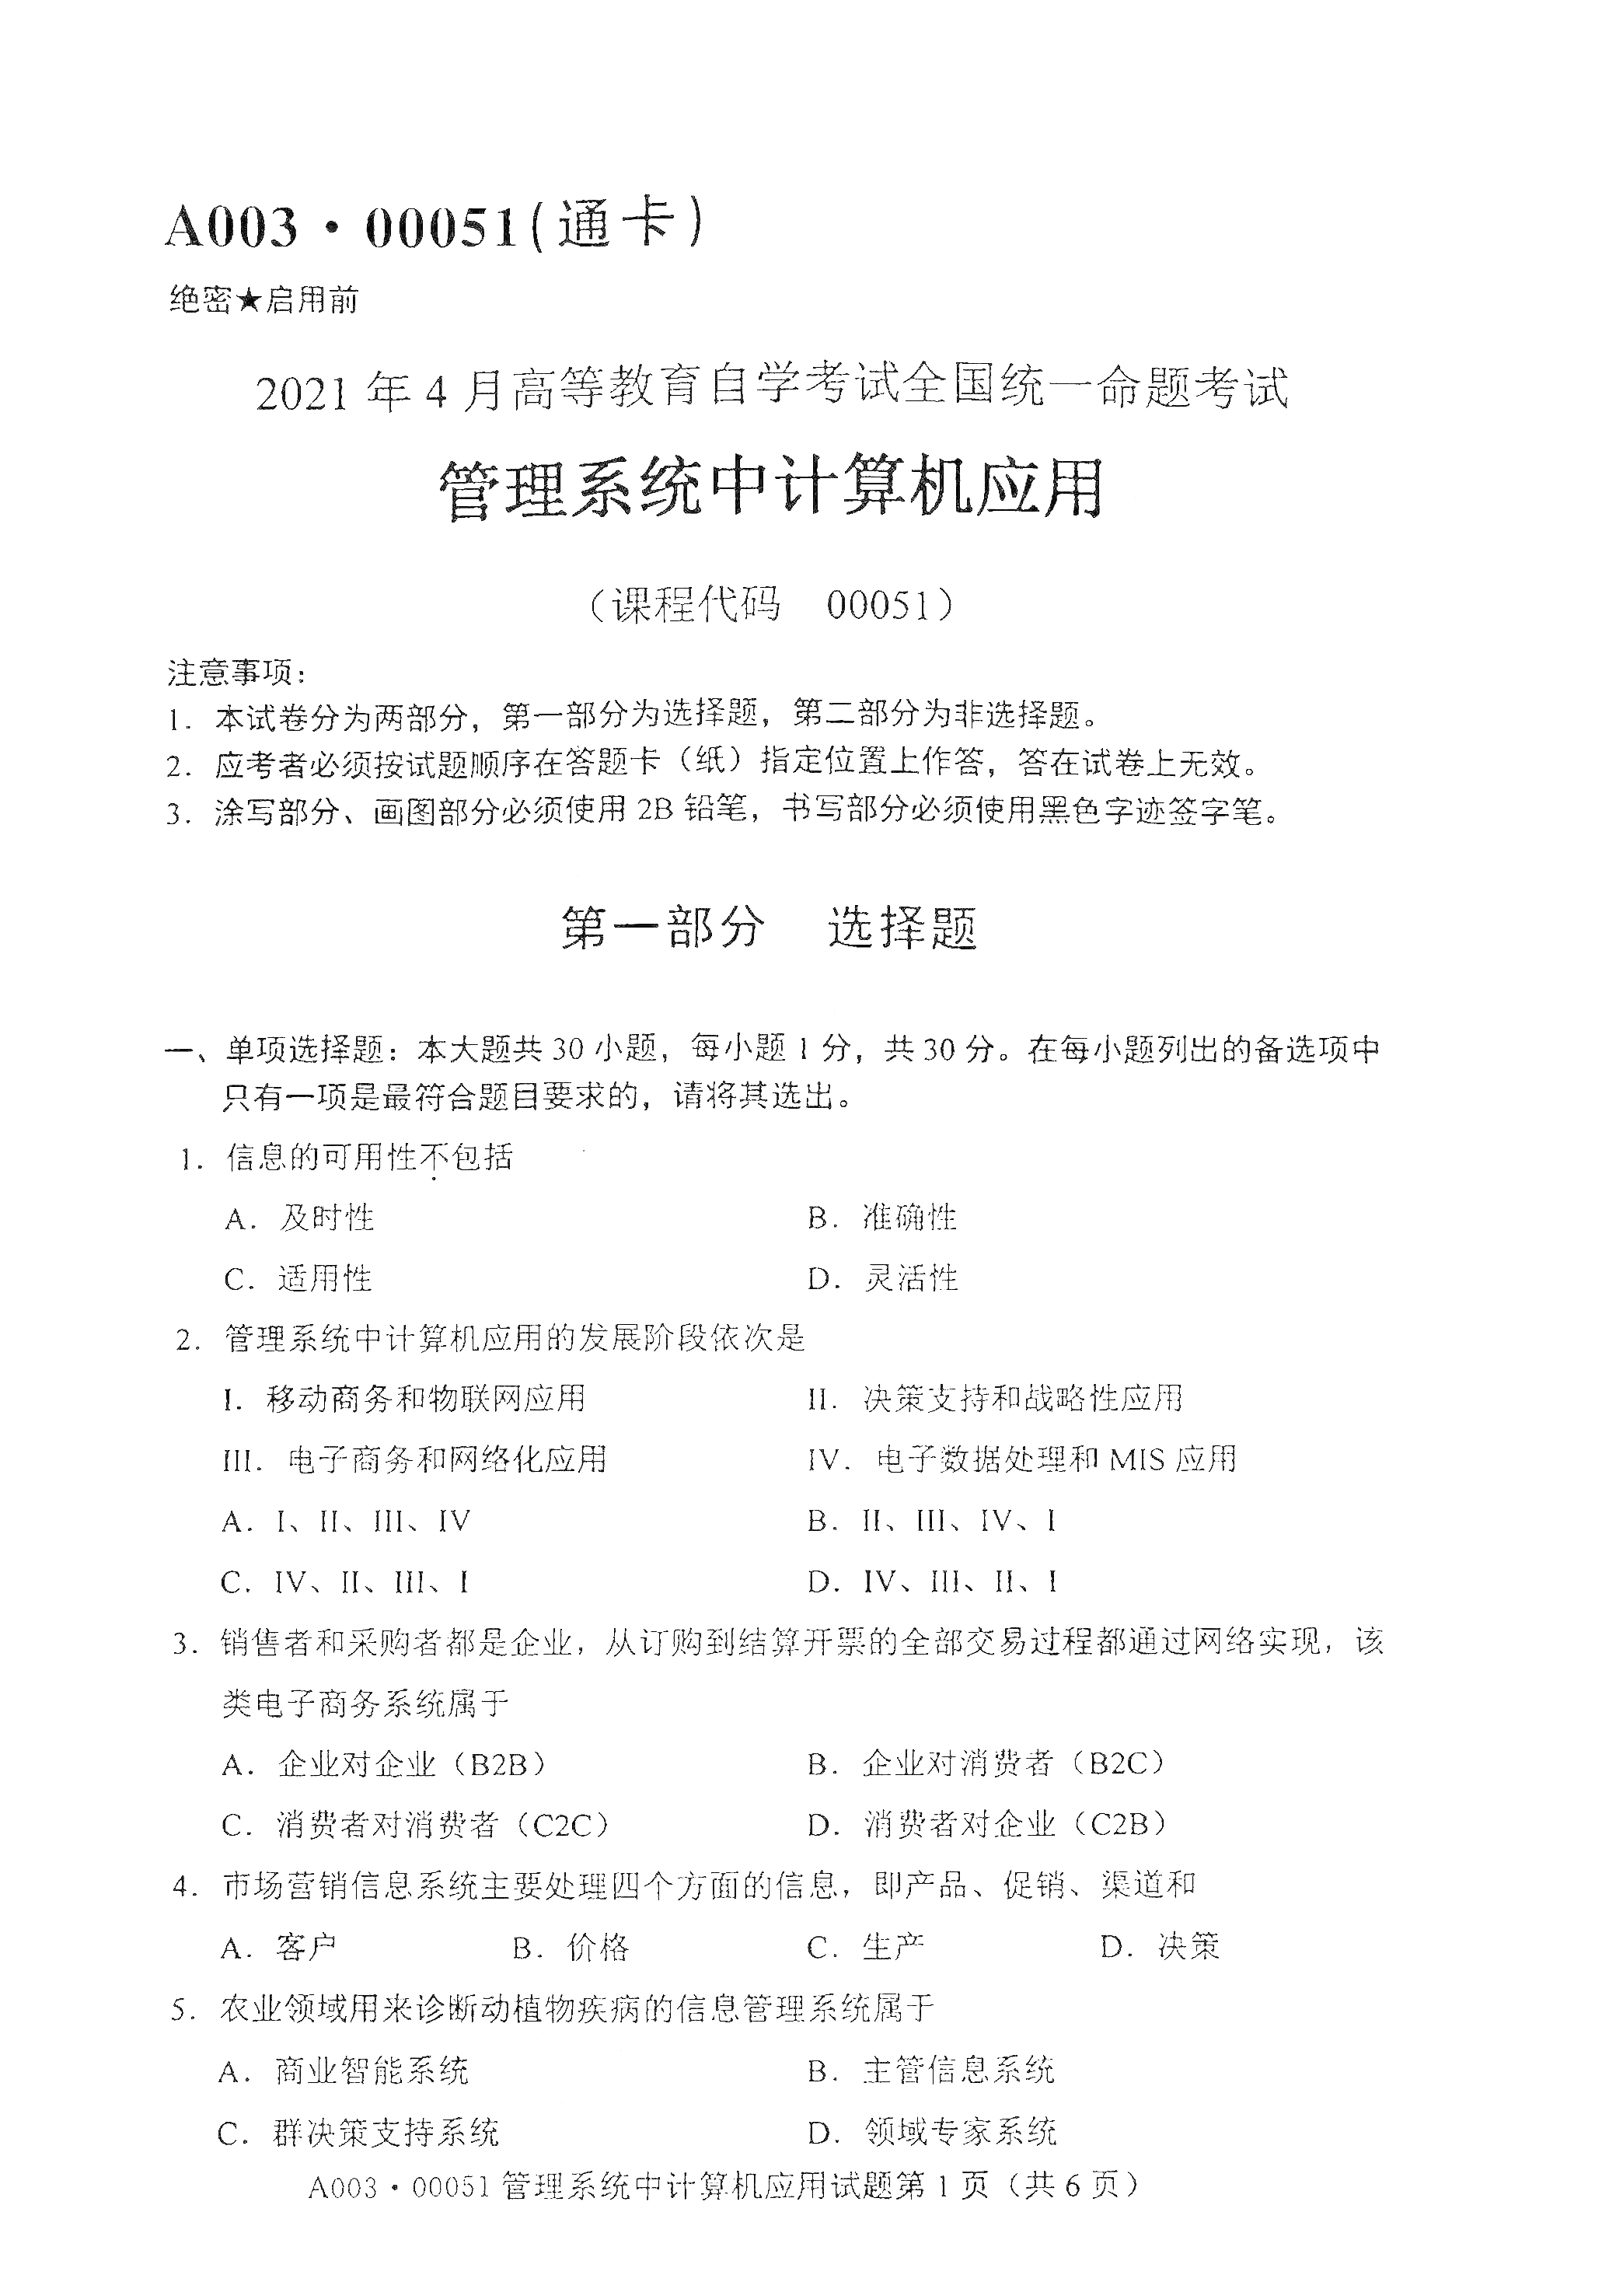 2021年4月天津自考管理系统中计算机应用真题试卷